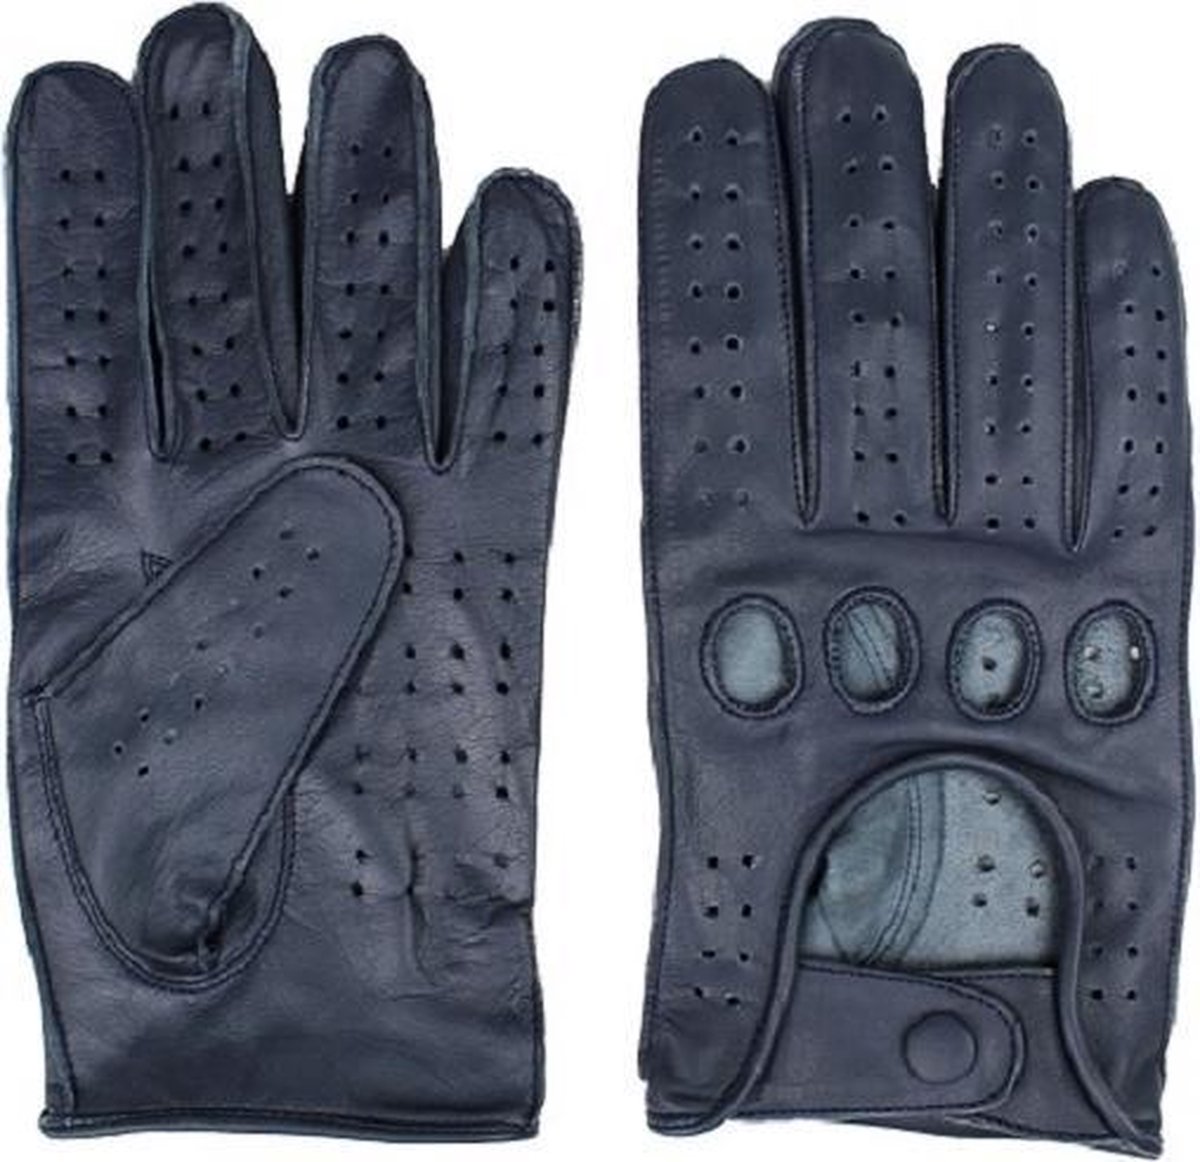 DriveLux™ Racing Leren Handschoenen Heren - Navy Luxe - Leren Auto/Motor Handschoenen - Driving Gloves - Maat XL (: 23,5 - 26,5 cm) - Ademend en Waterbestendig – Gemaakt van Lamsleer